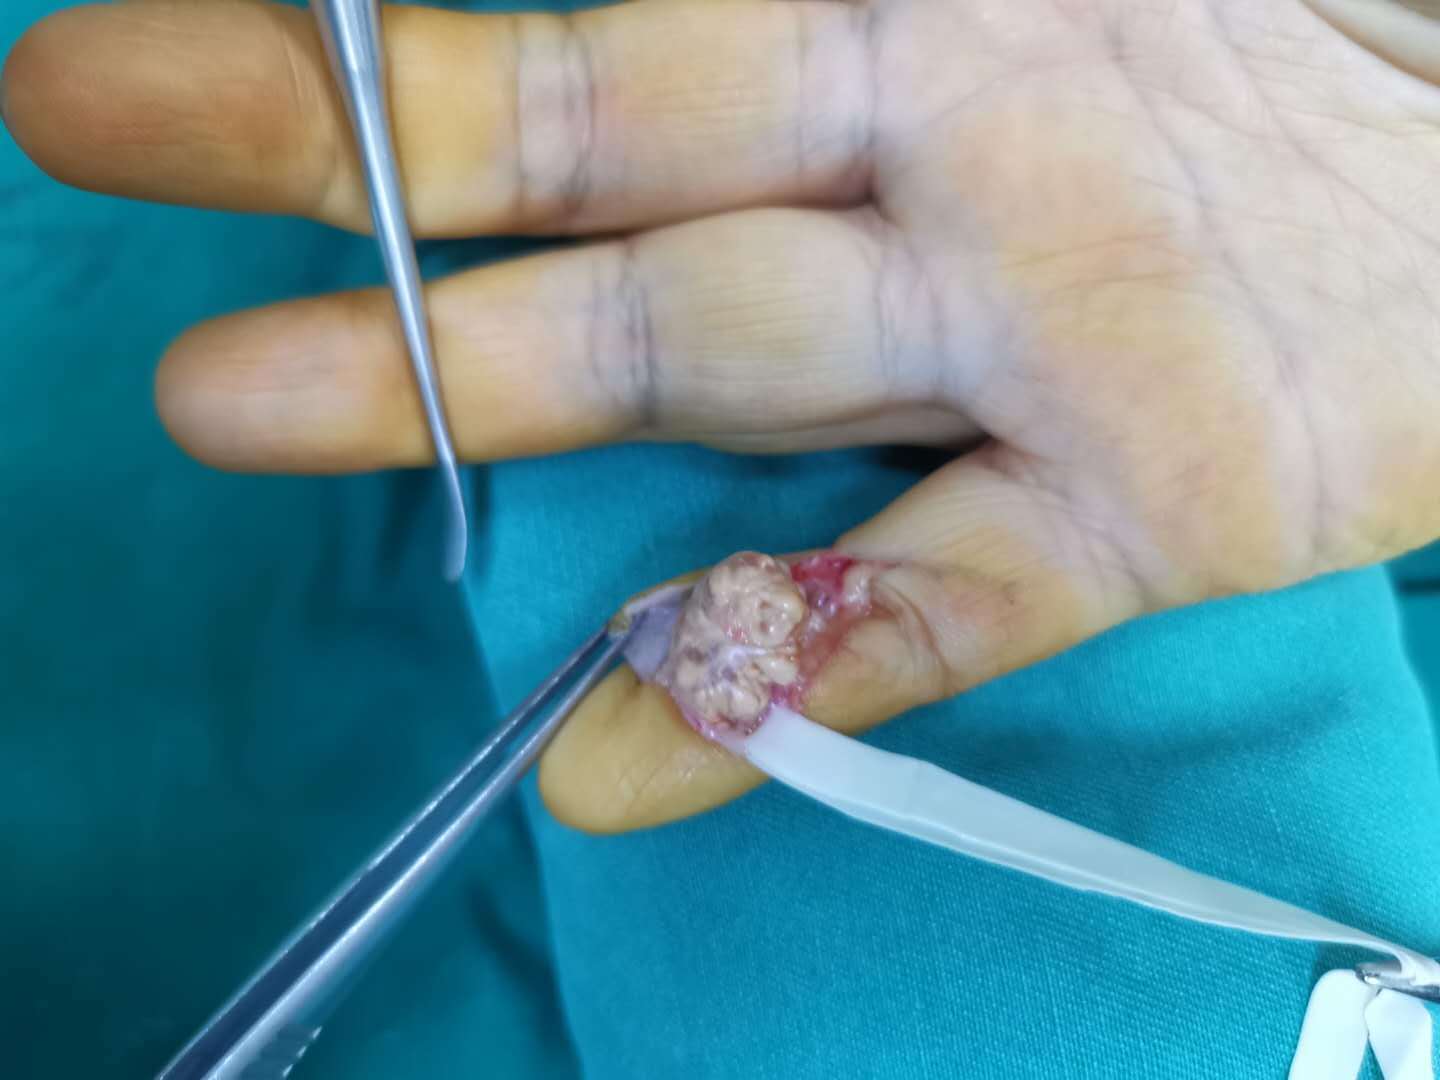 手部肿瘤初期图片